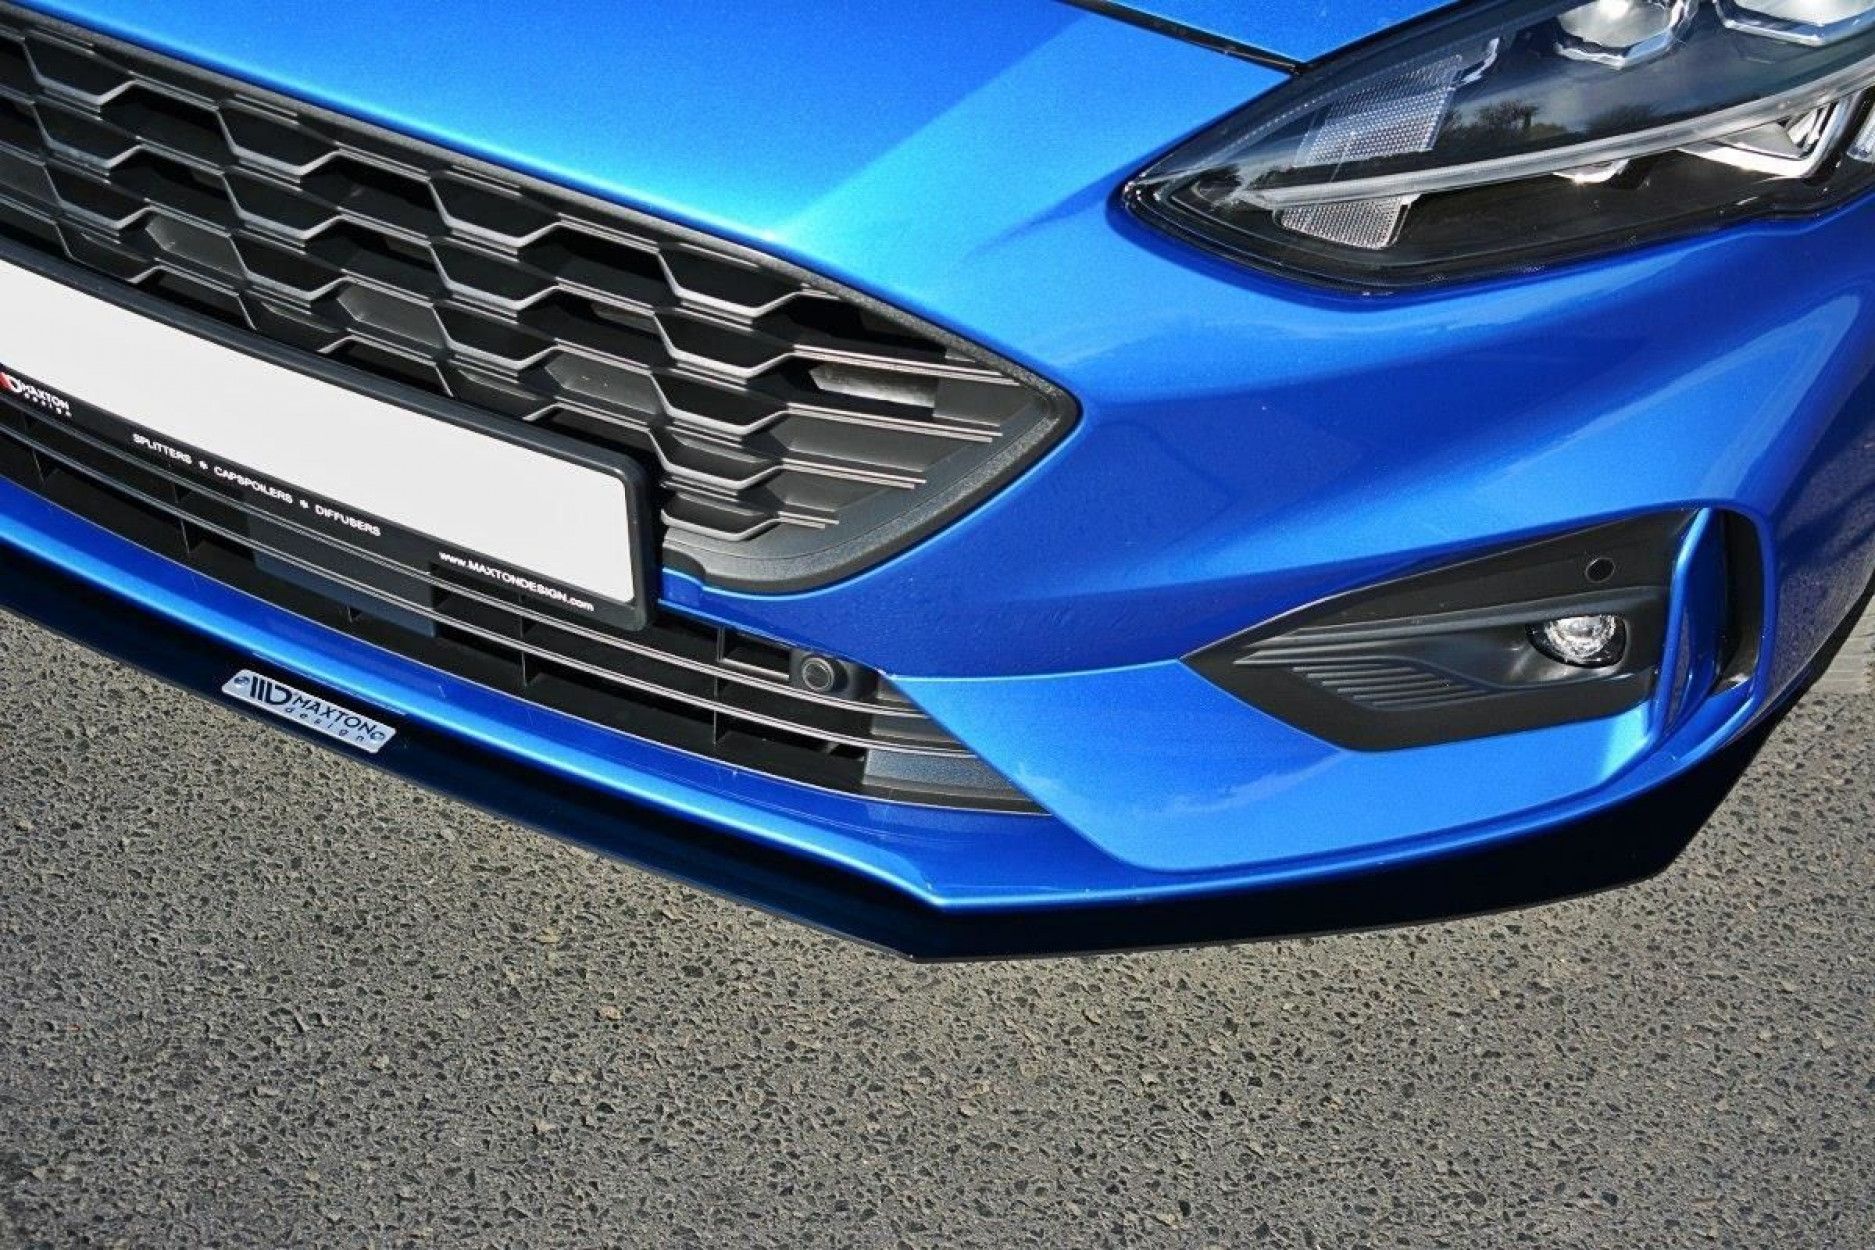 Maxtondesign Frontlippe für Ford Focus MK4 STST-Line Racing schwarz -  online kaufen bei CFD